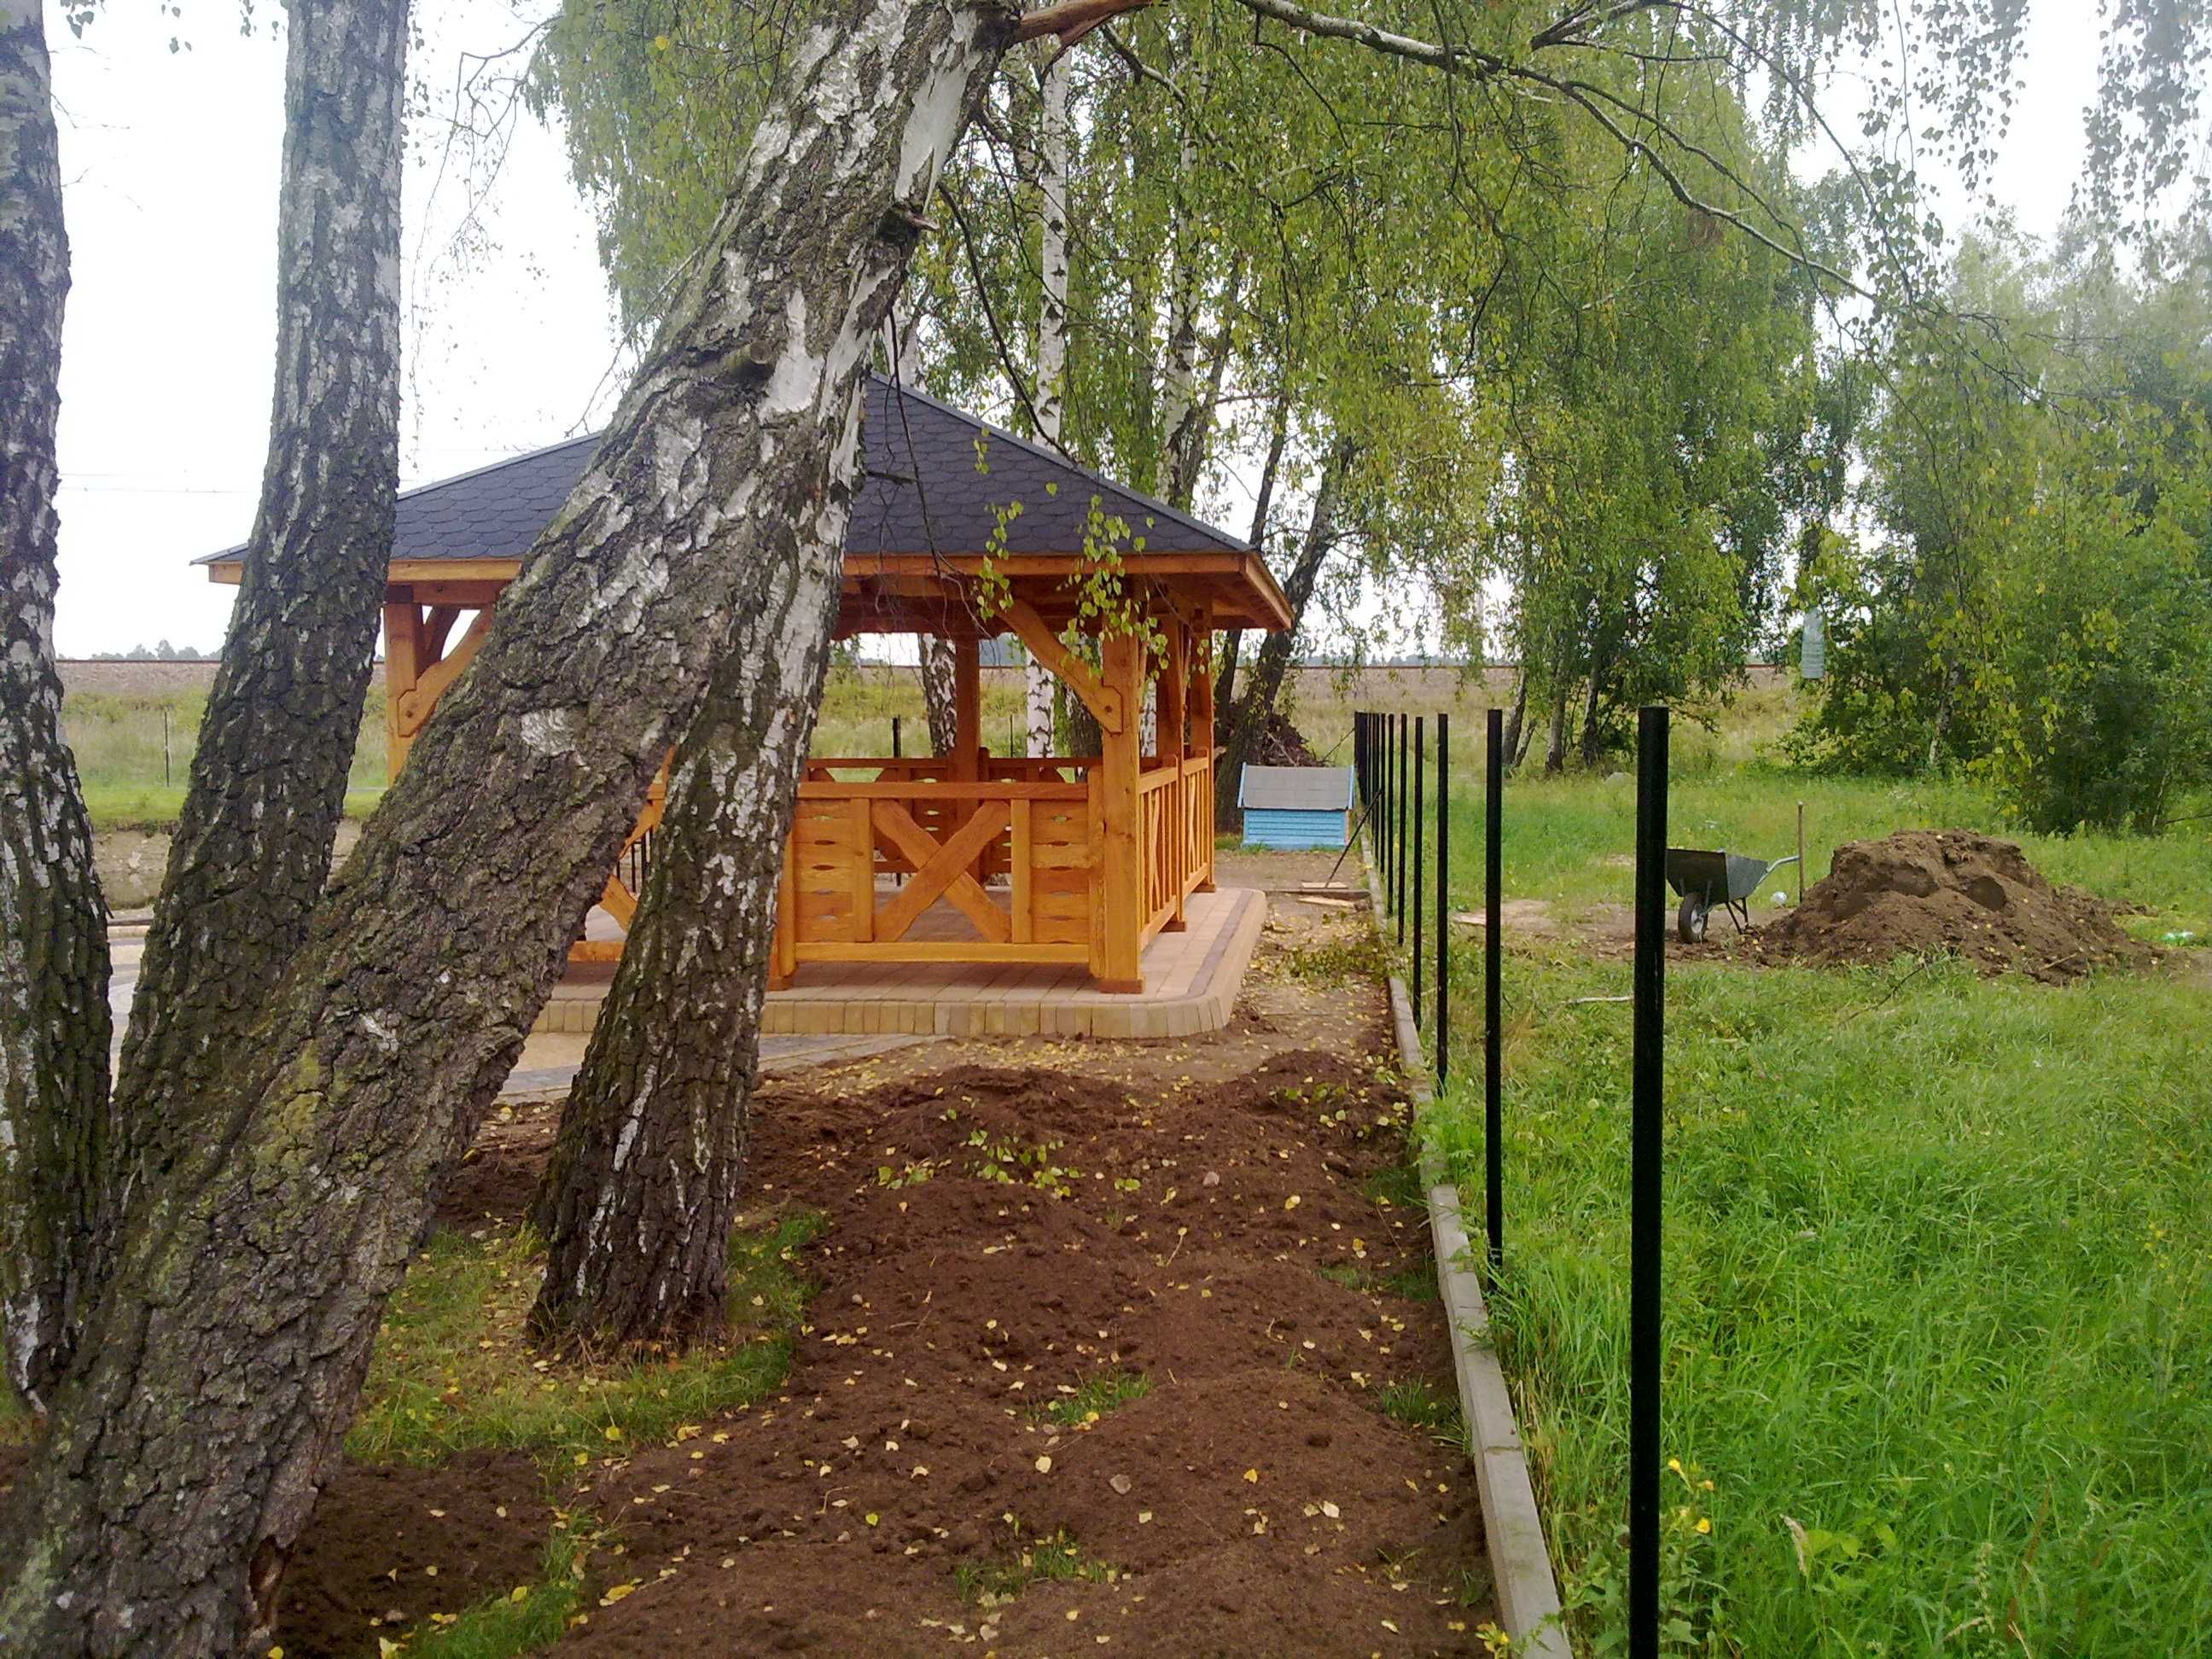 Drewniana Altana Altanka ogrodowa modrzewiowa 4x6 meble ogrodowe